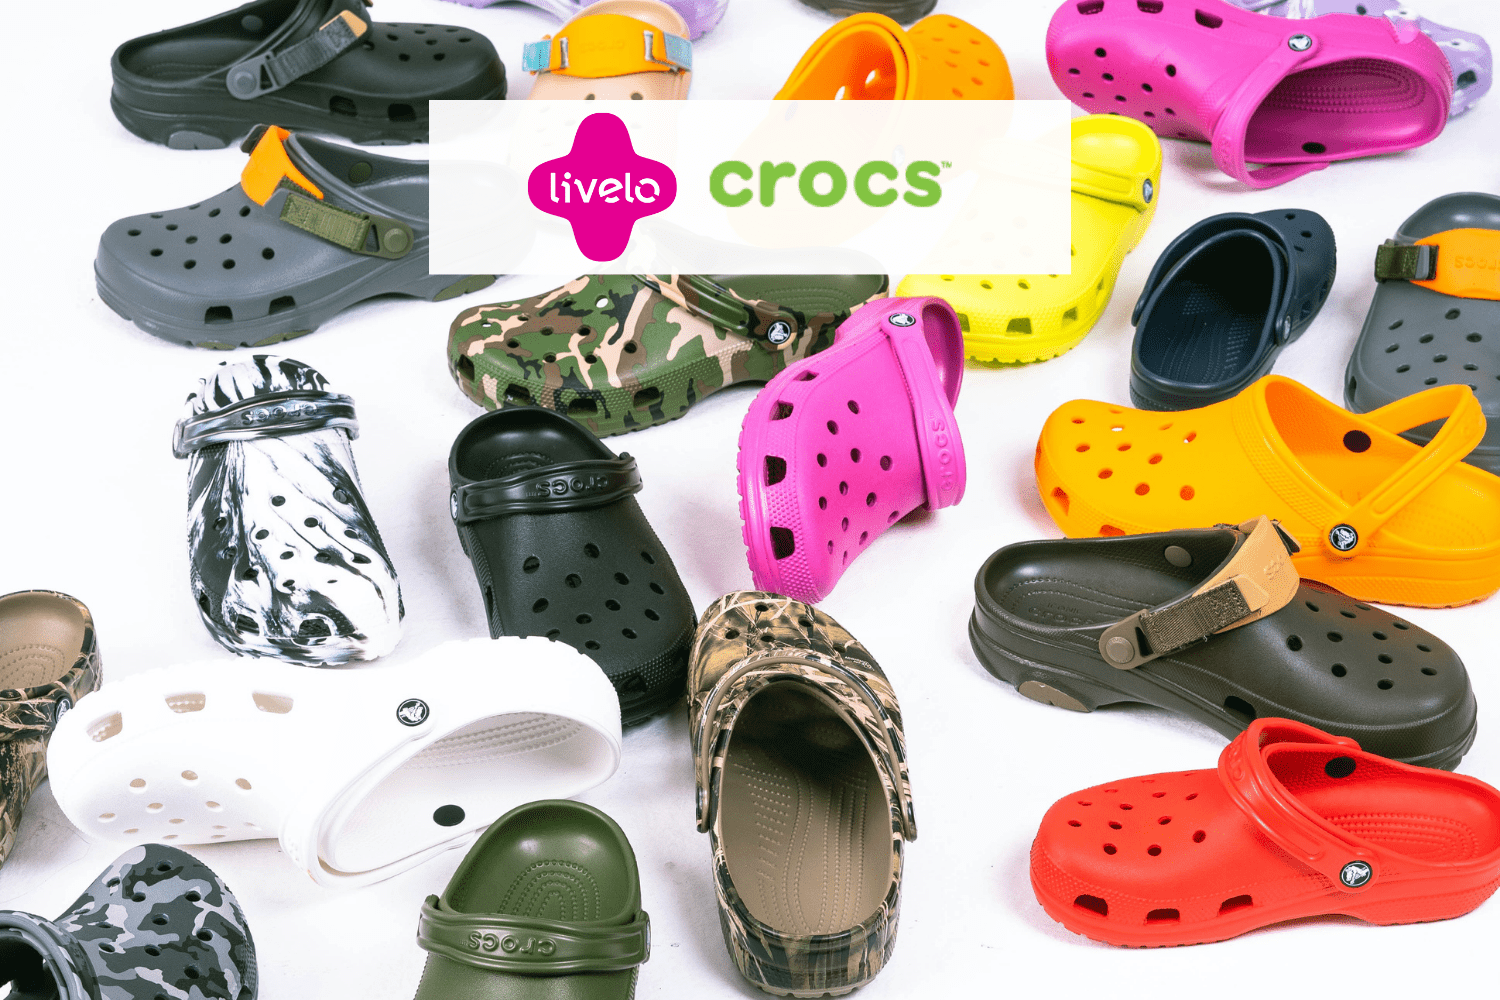 calçados crocs coloridos com logo Livelo e Crocs 6 pontos Livelo